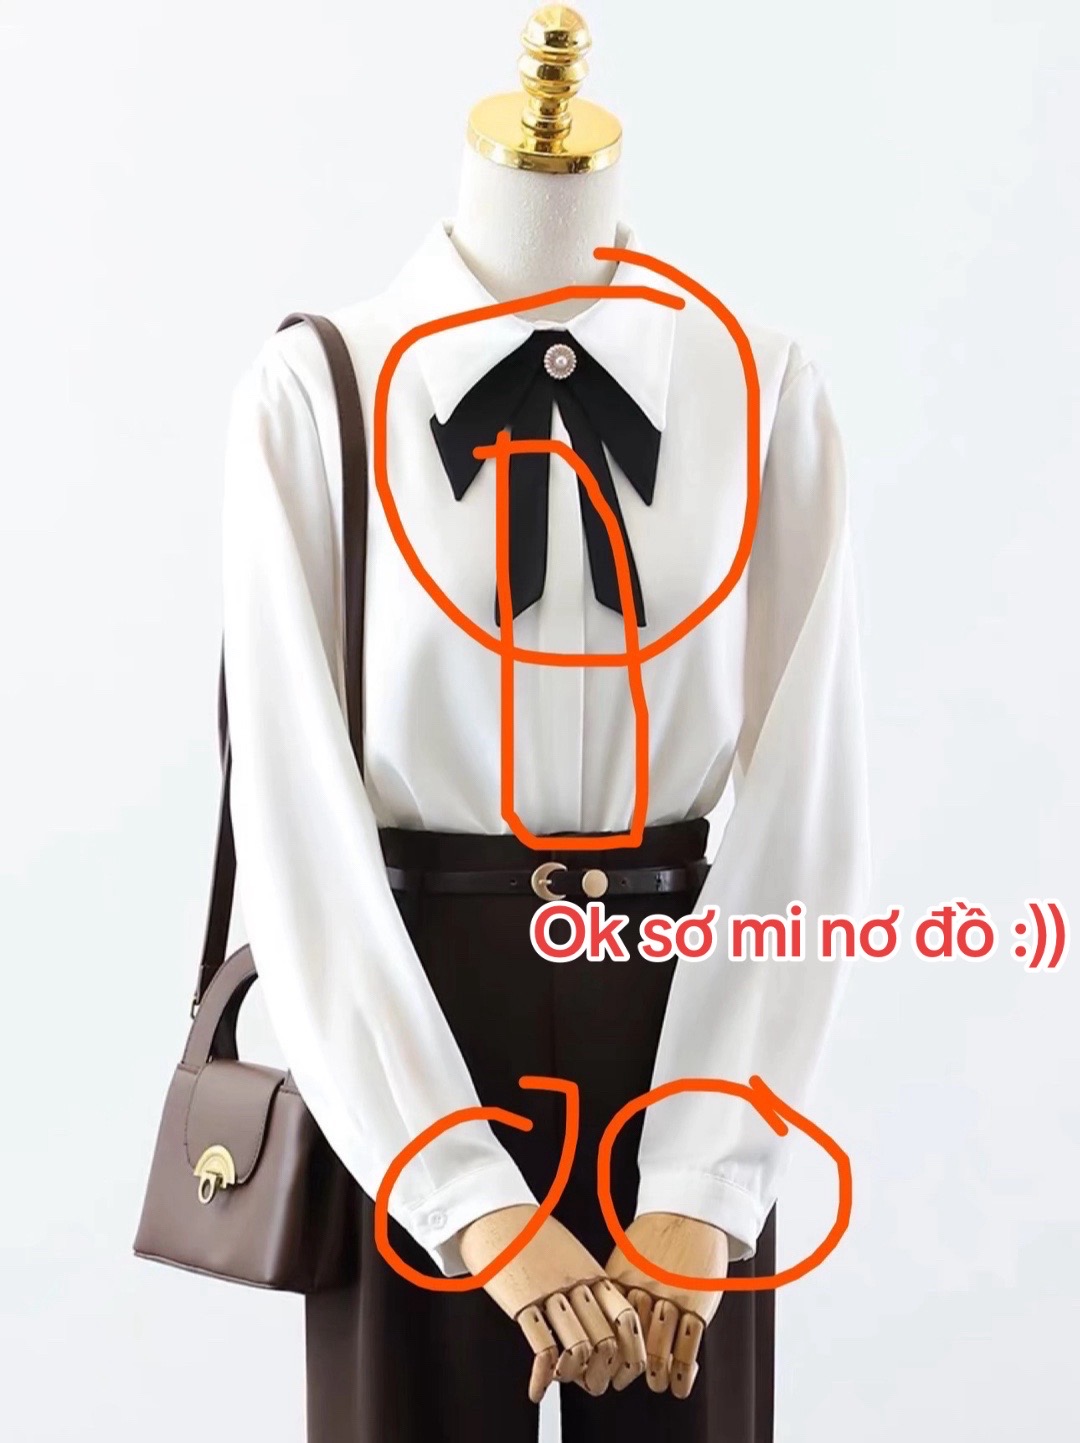 1001 chuyện cười ra nước mắt khi order quần áo trên Taobao: Hàng về tay "không đội trời chung" so với ảnh mẫu- Ảnh 13.